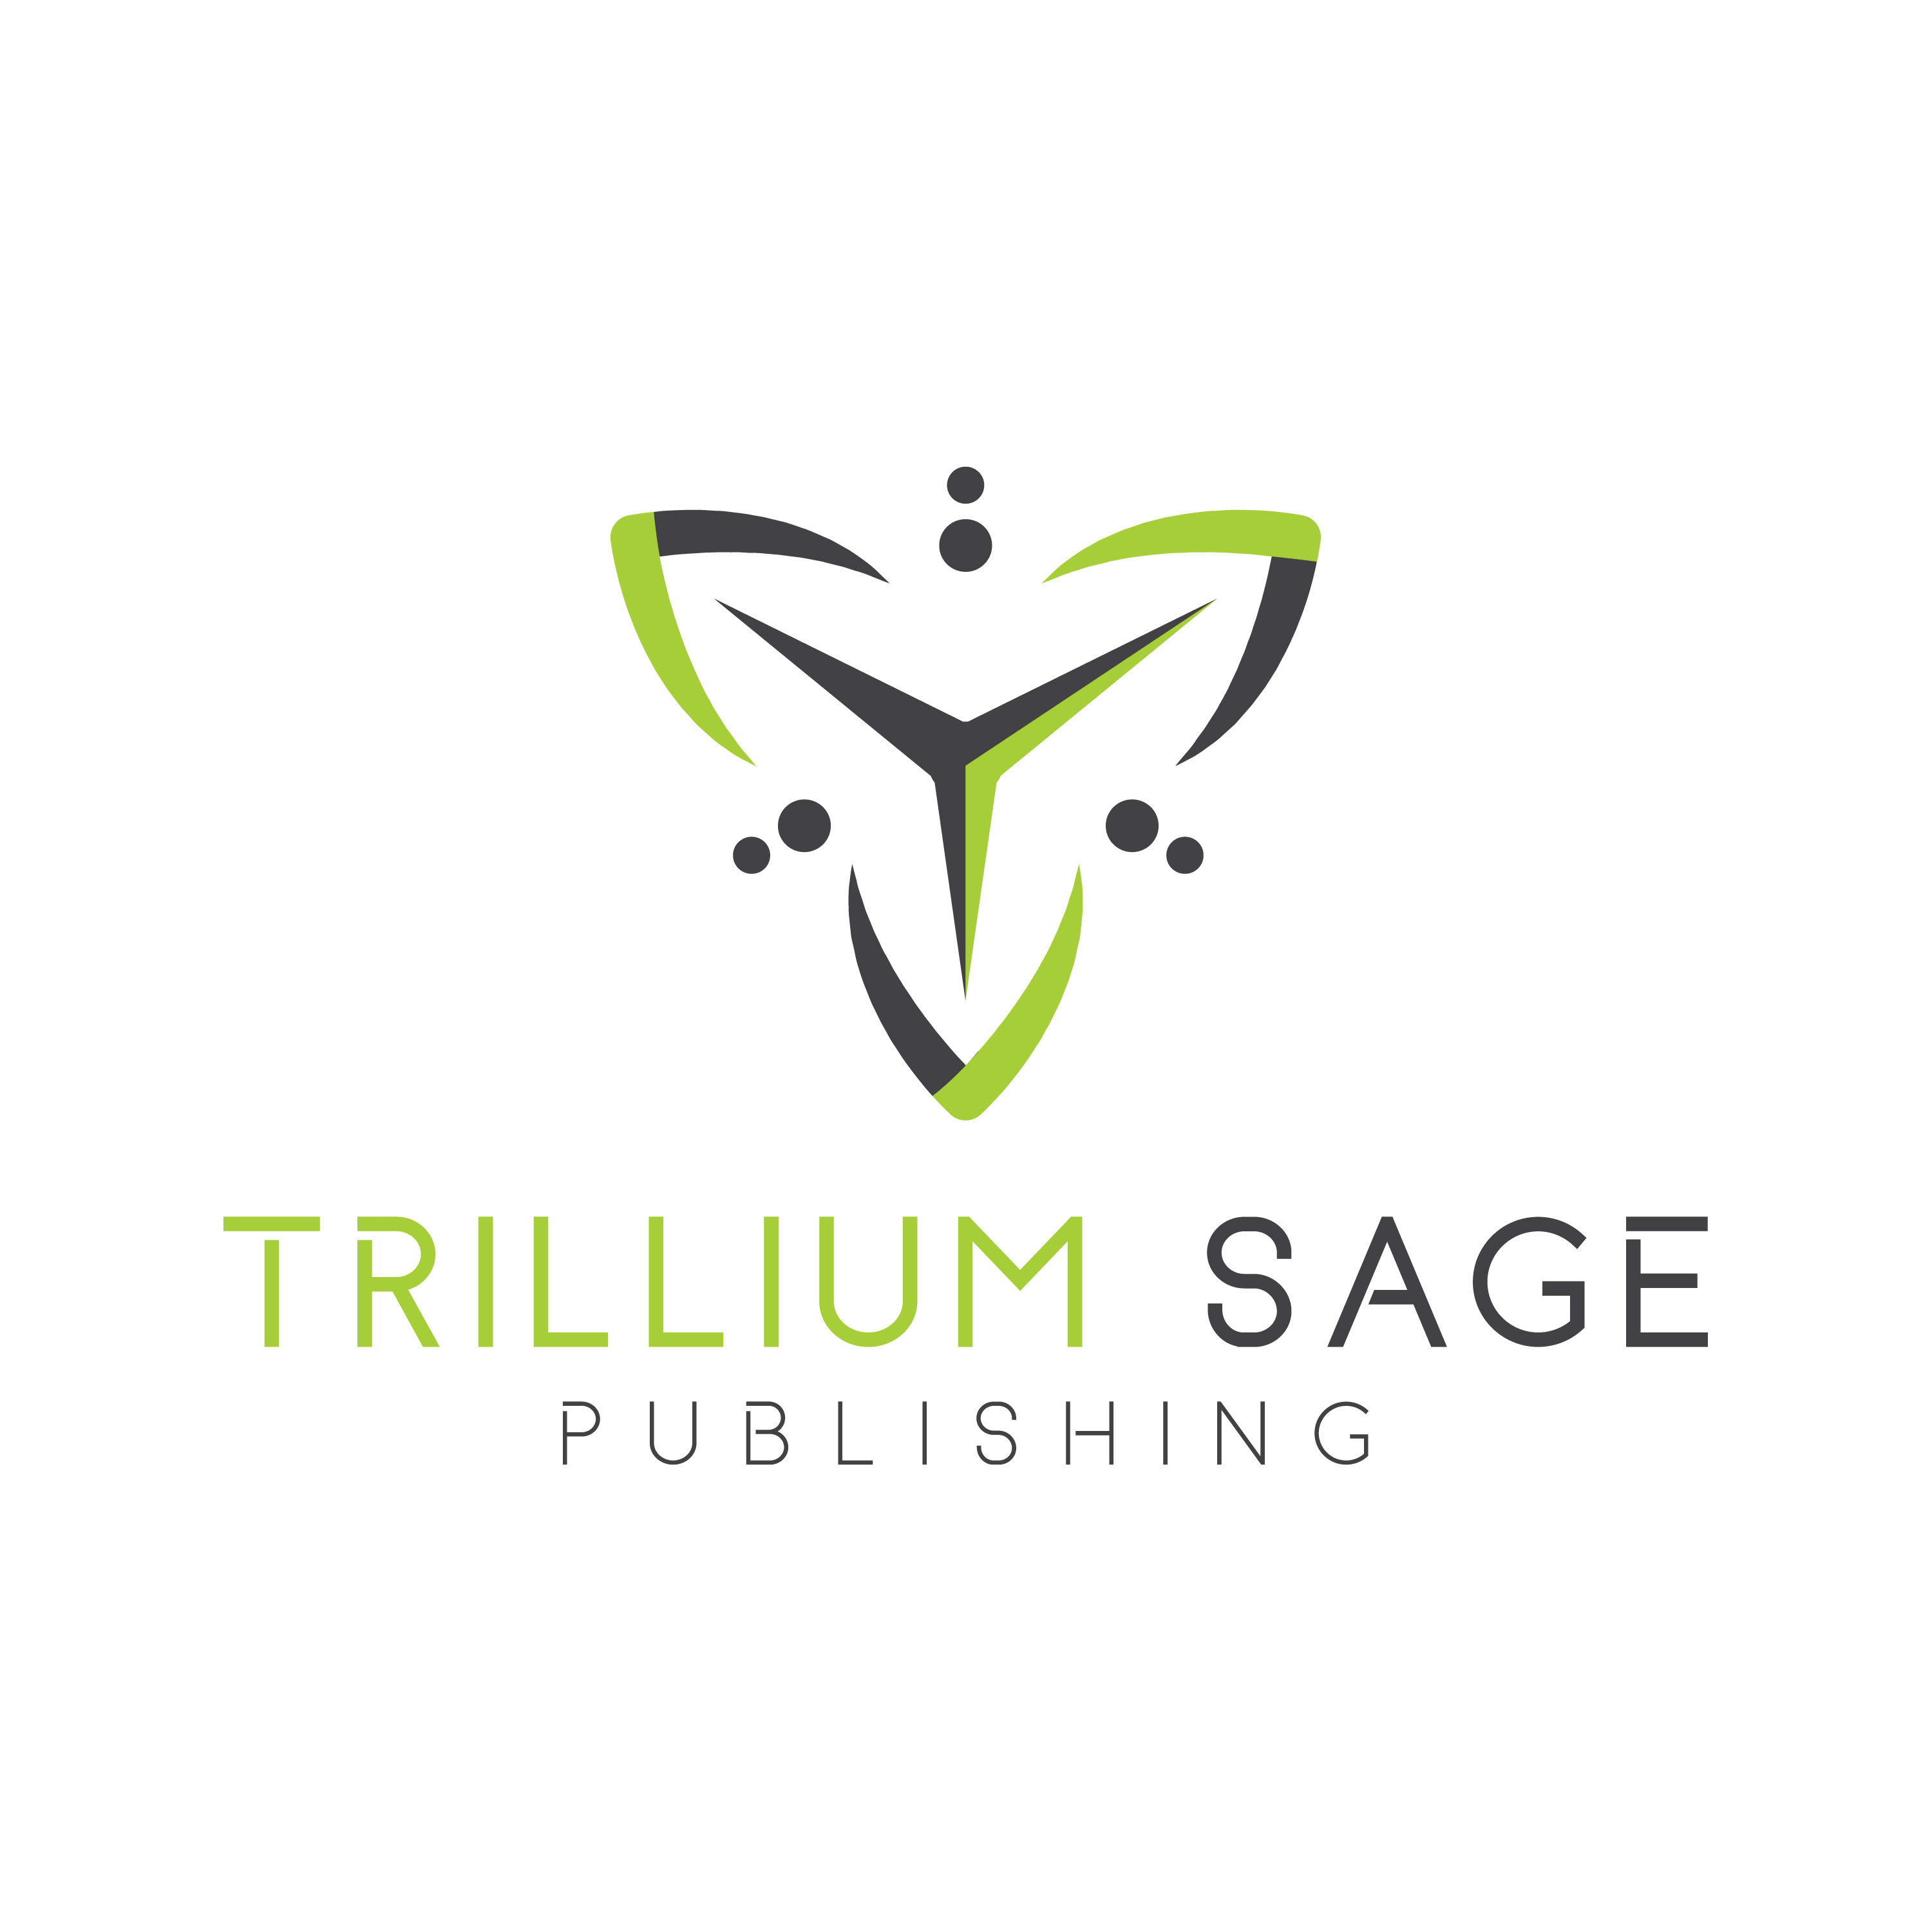 TRILLIUM SAGE PUBLISHING